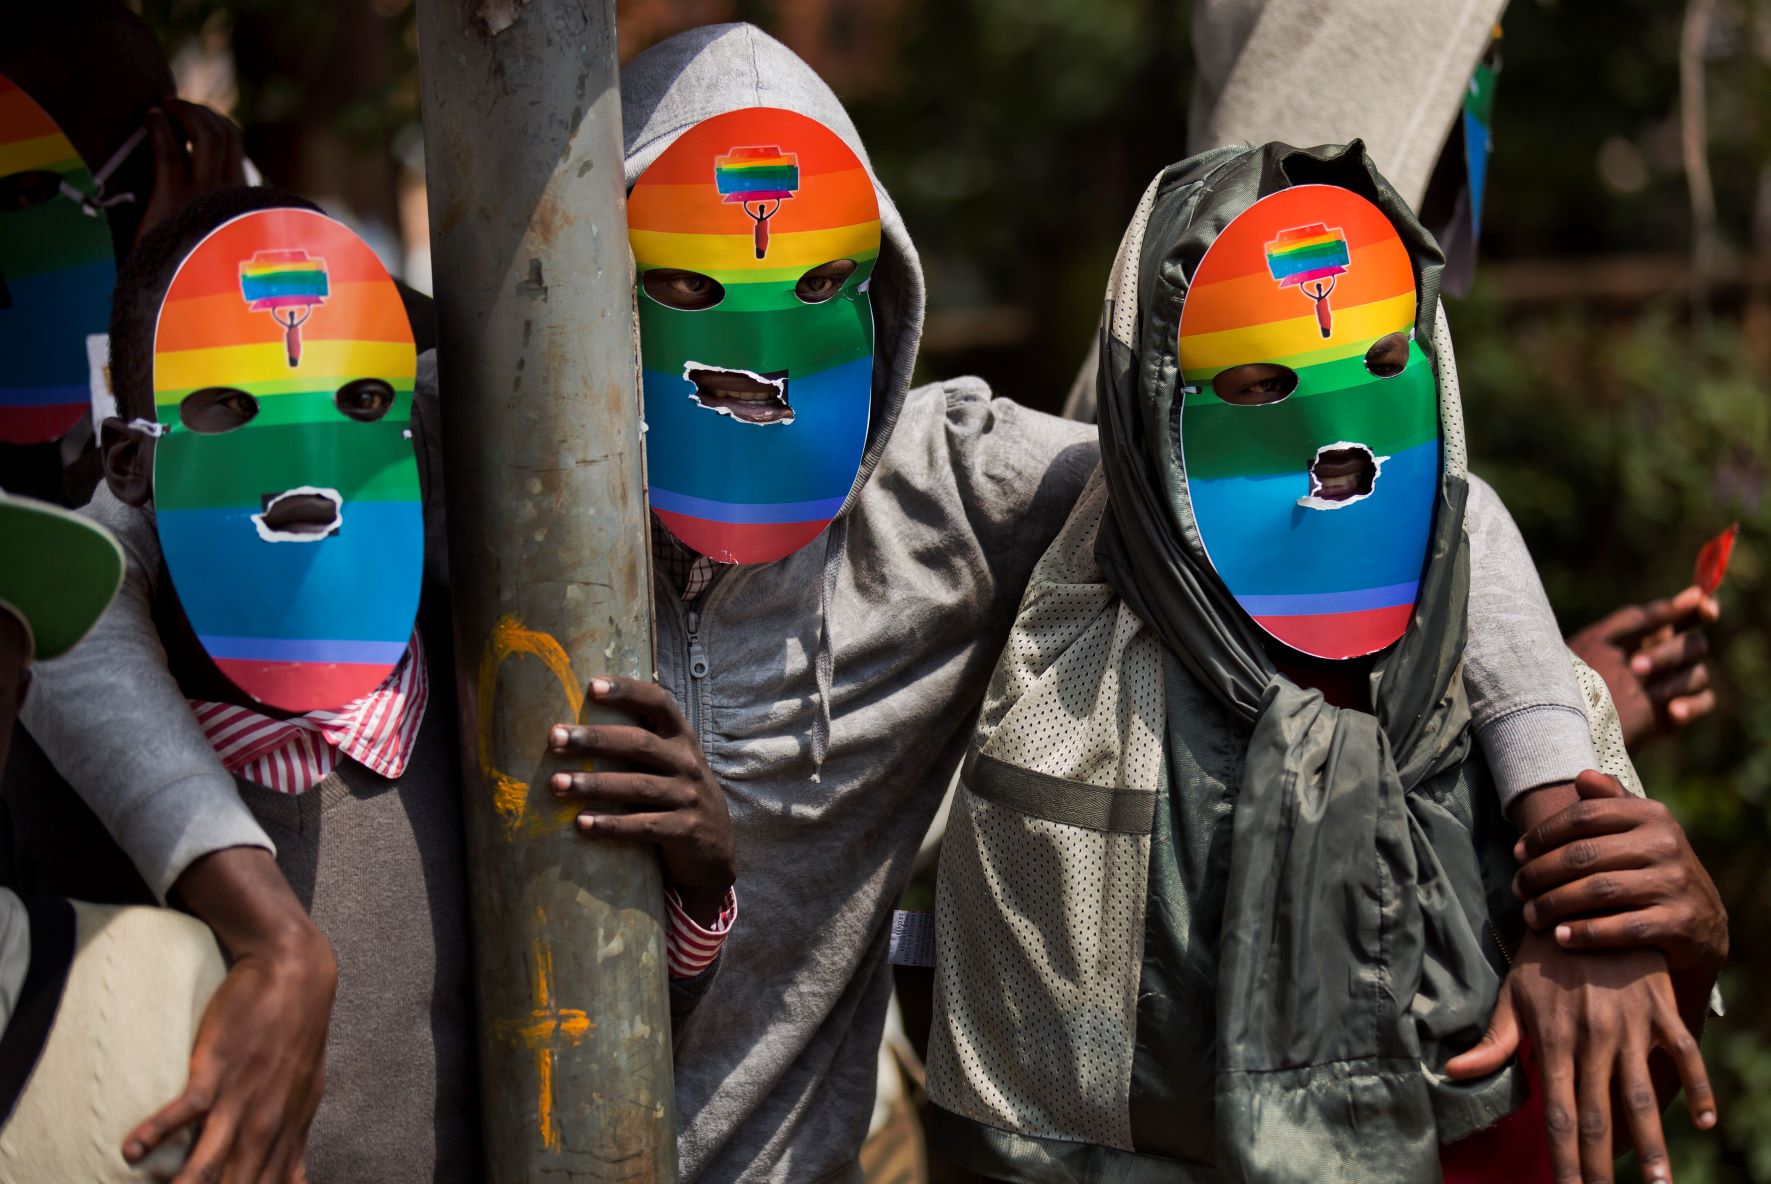 Ουγκάντα: Καταδίκη από ΟΗΕ, ΕΕ και ΗΠΑ για το νομοσχέδιο εναντίον των σεξουαλικών μειονοτήτων